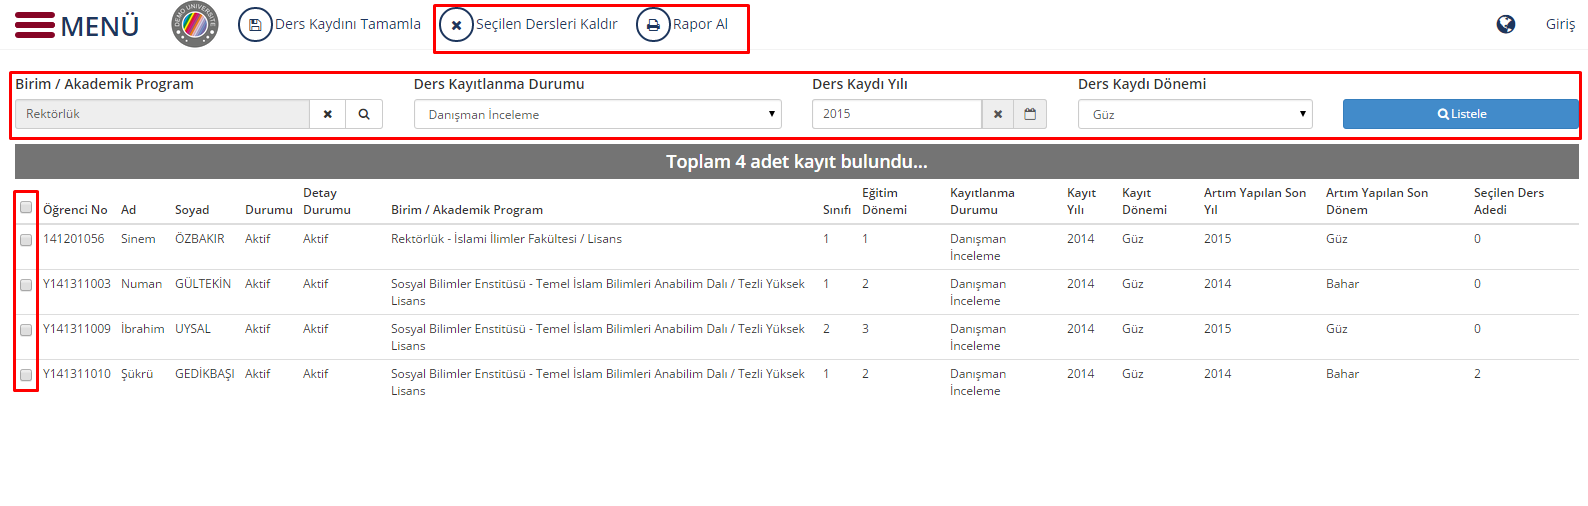 8.11 TOPLU KAYITLANMA TAMAMLAMA Kayıtlanması tamamlanmamış öğrencilerin toplu kaydının yapılabildiği ekrandır. Sayfada ayrıca öğrencilerin seçtiği derslerin kaldırılması işlemi de yapılabilmektedir.